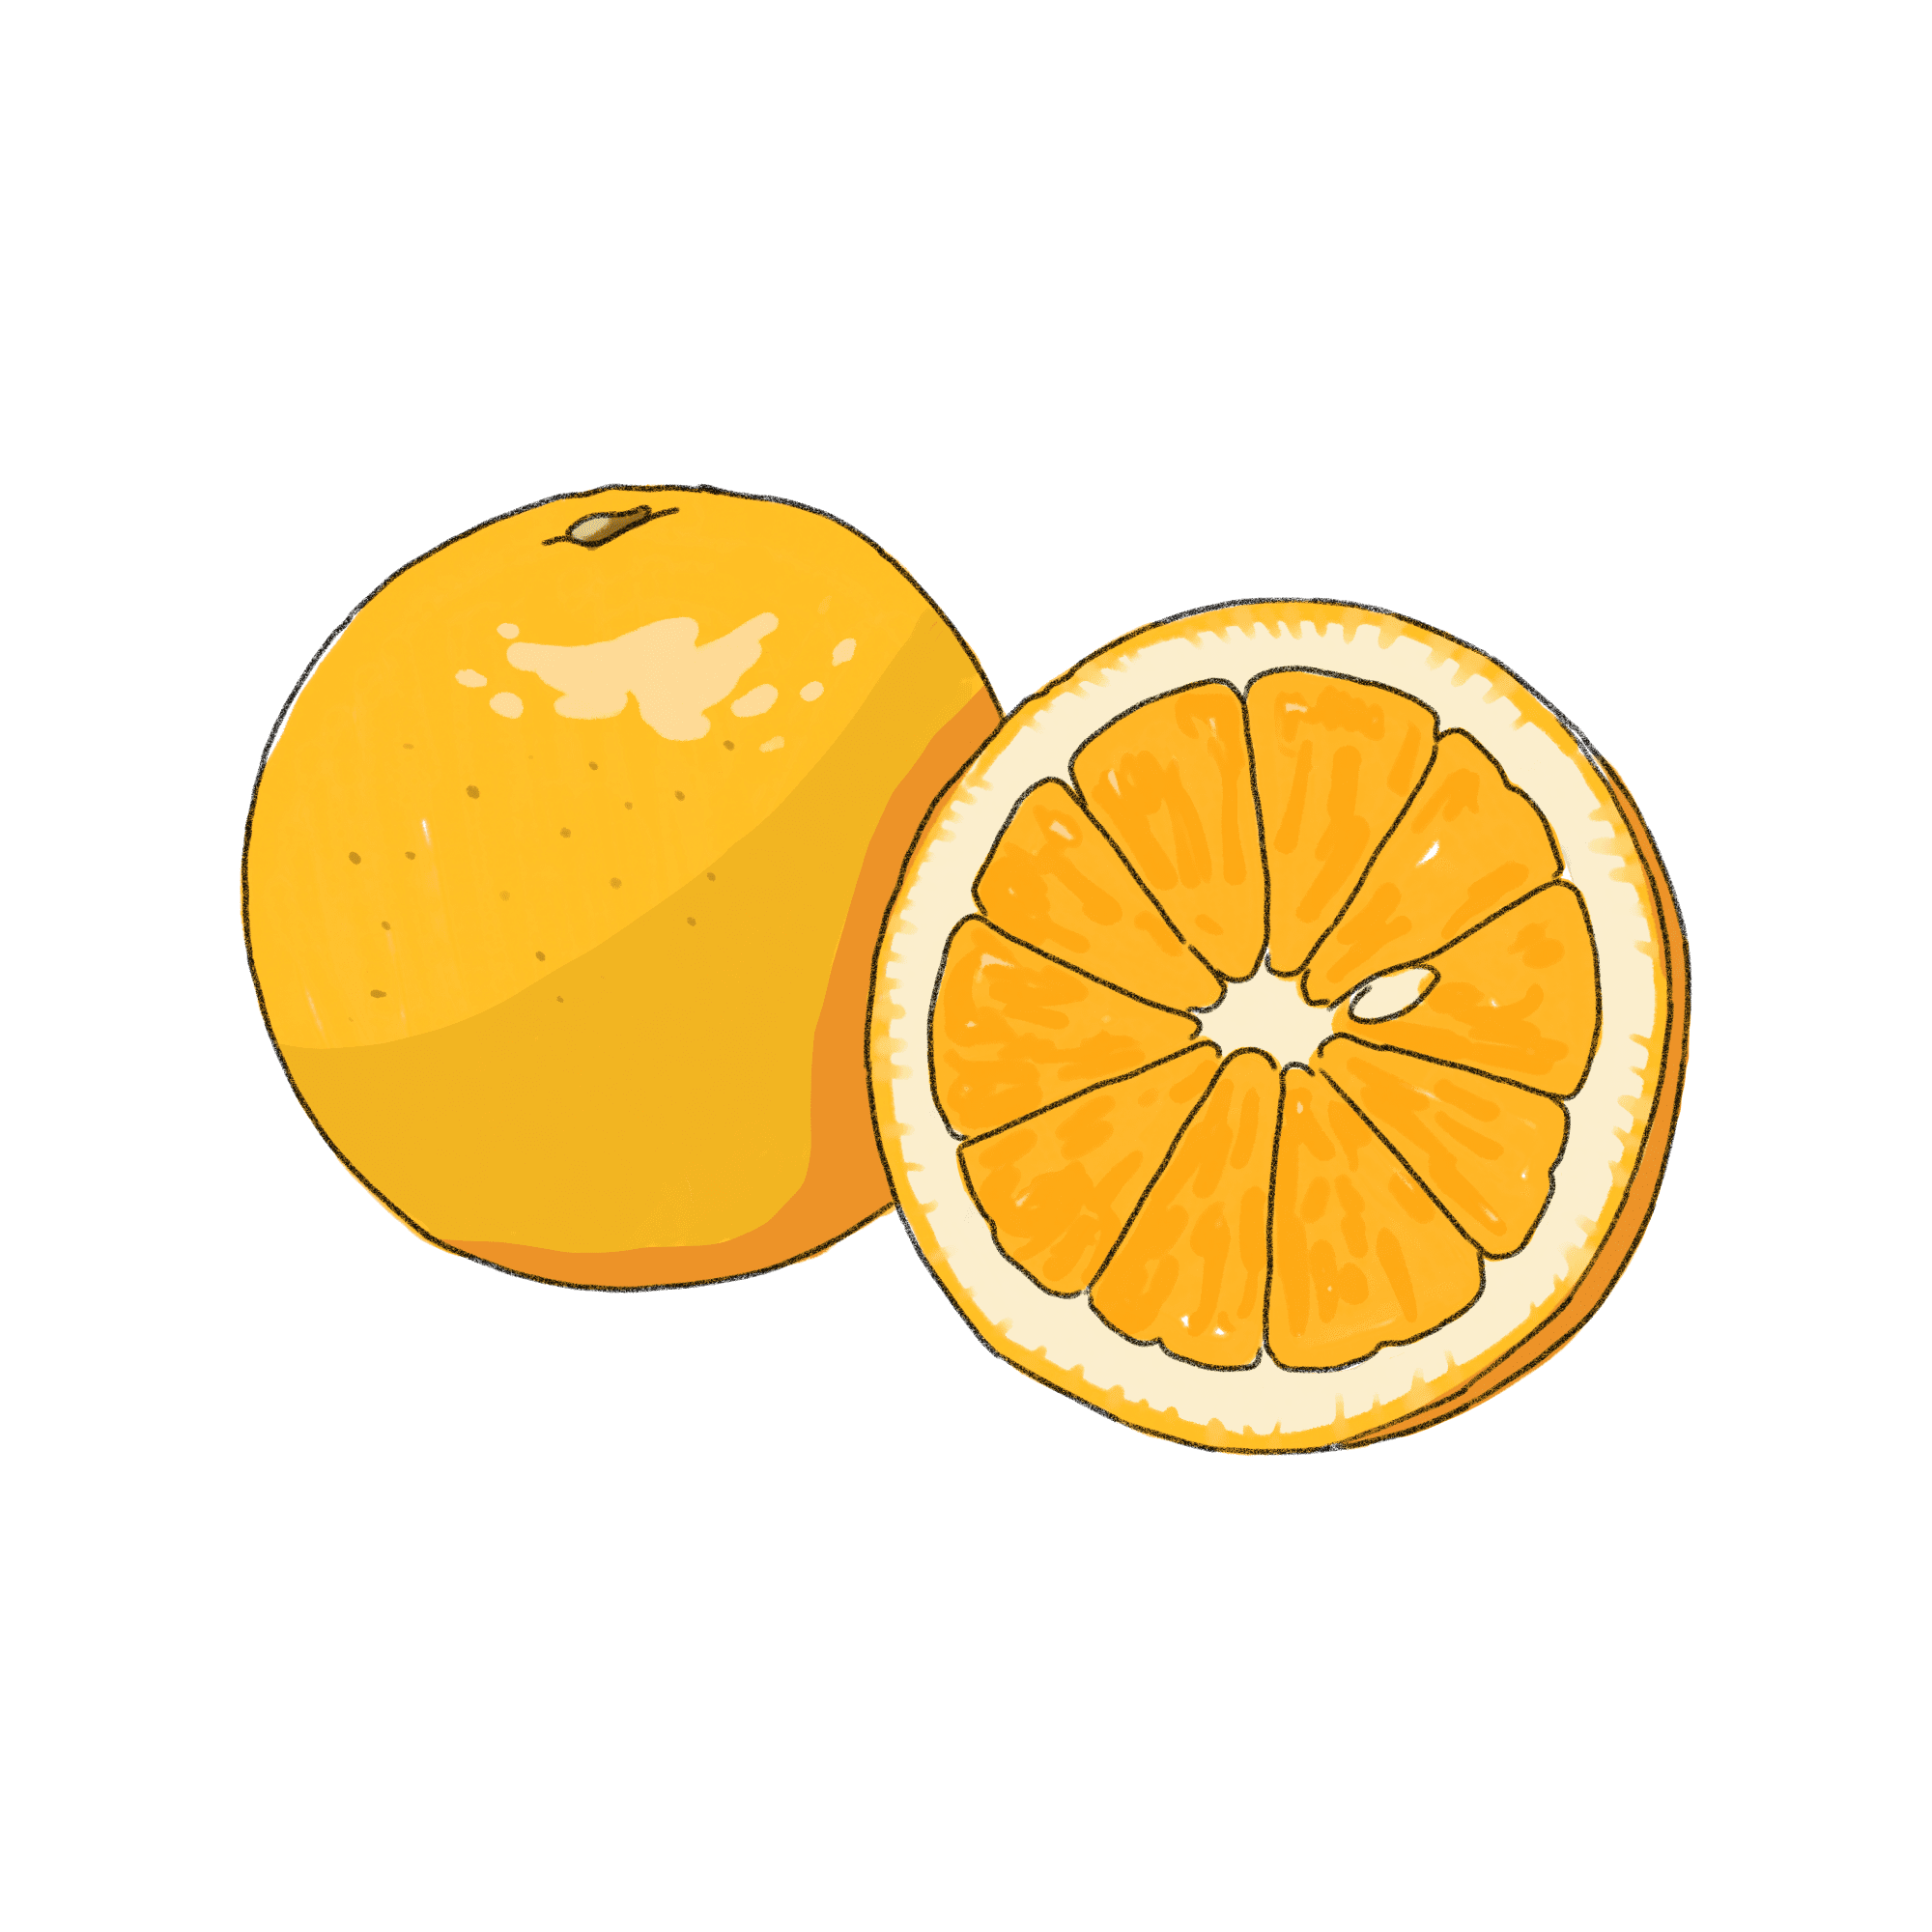 オレンジのイラスト 02 フリー素材 Greenstock40